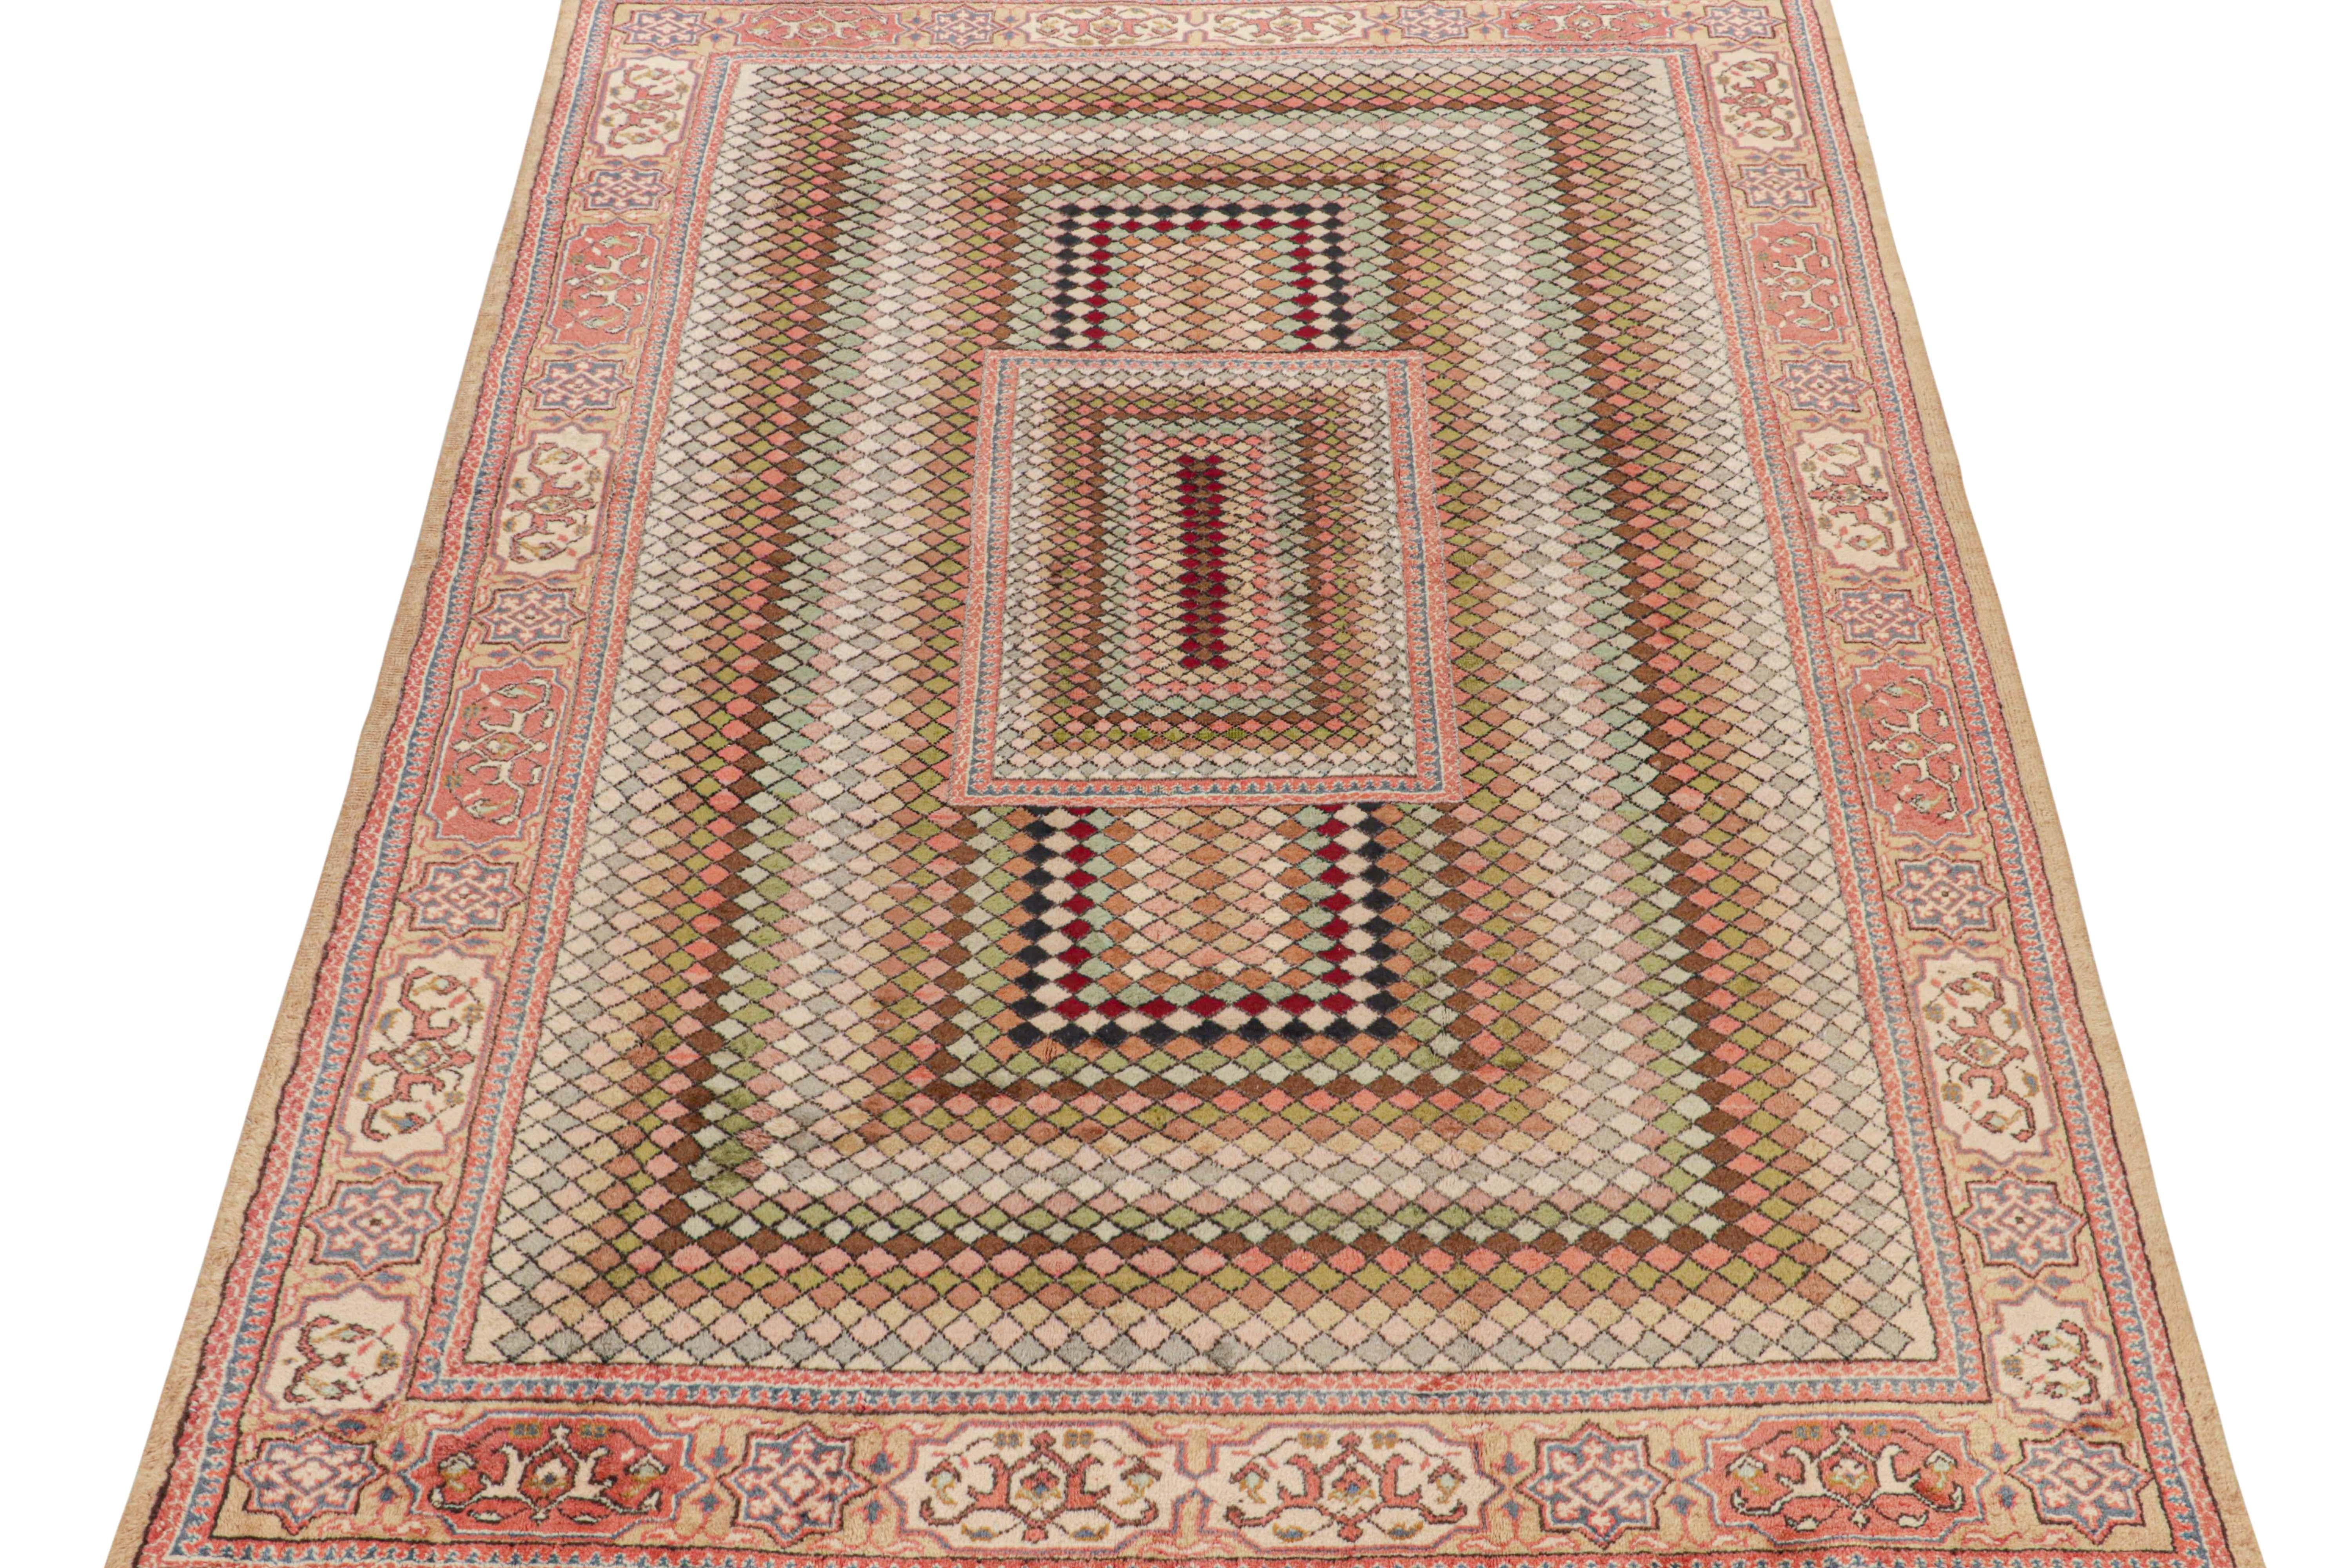 Dieser 8x11 große Vintage-Teppich ist ein seltener Neuzugang in der Mid-Century Pasha Collection'S von Rug & Kilim. Diese Linie ist ein Gedenken, mit seltenen Kurationen, die unserer Meinung nach von dem multidisziplinären türkischen Designer Zeki